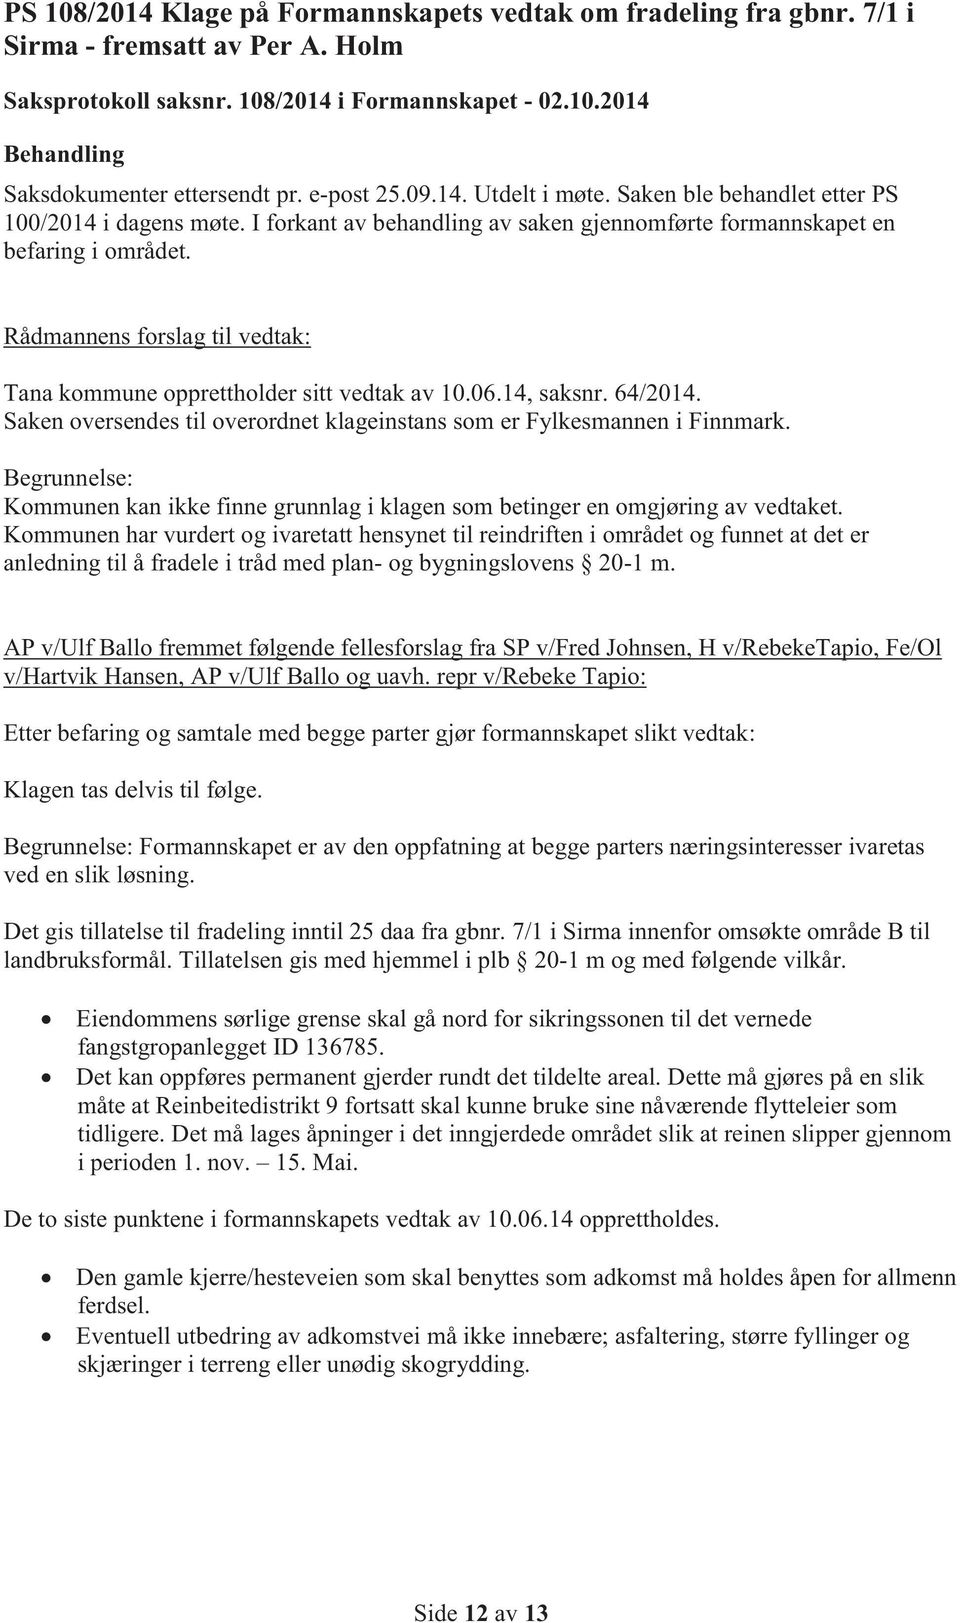 Rådmannens forslag til vedtak: Tana kommune opprettholder sitt vedtak av 10.06.14, saksnr. 64/2014. Saken oversendes til overordnet klageinstans som er Fylkesmannen i Finnmark.